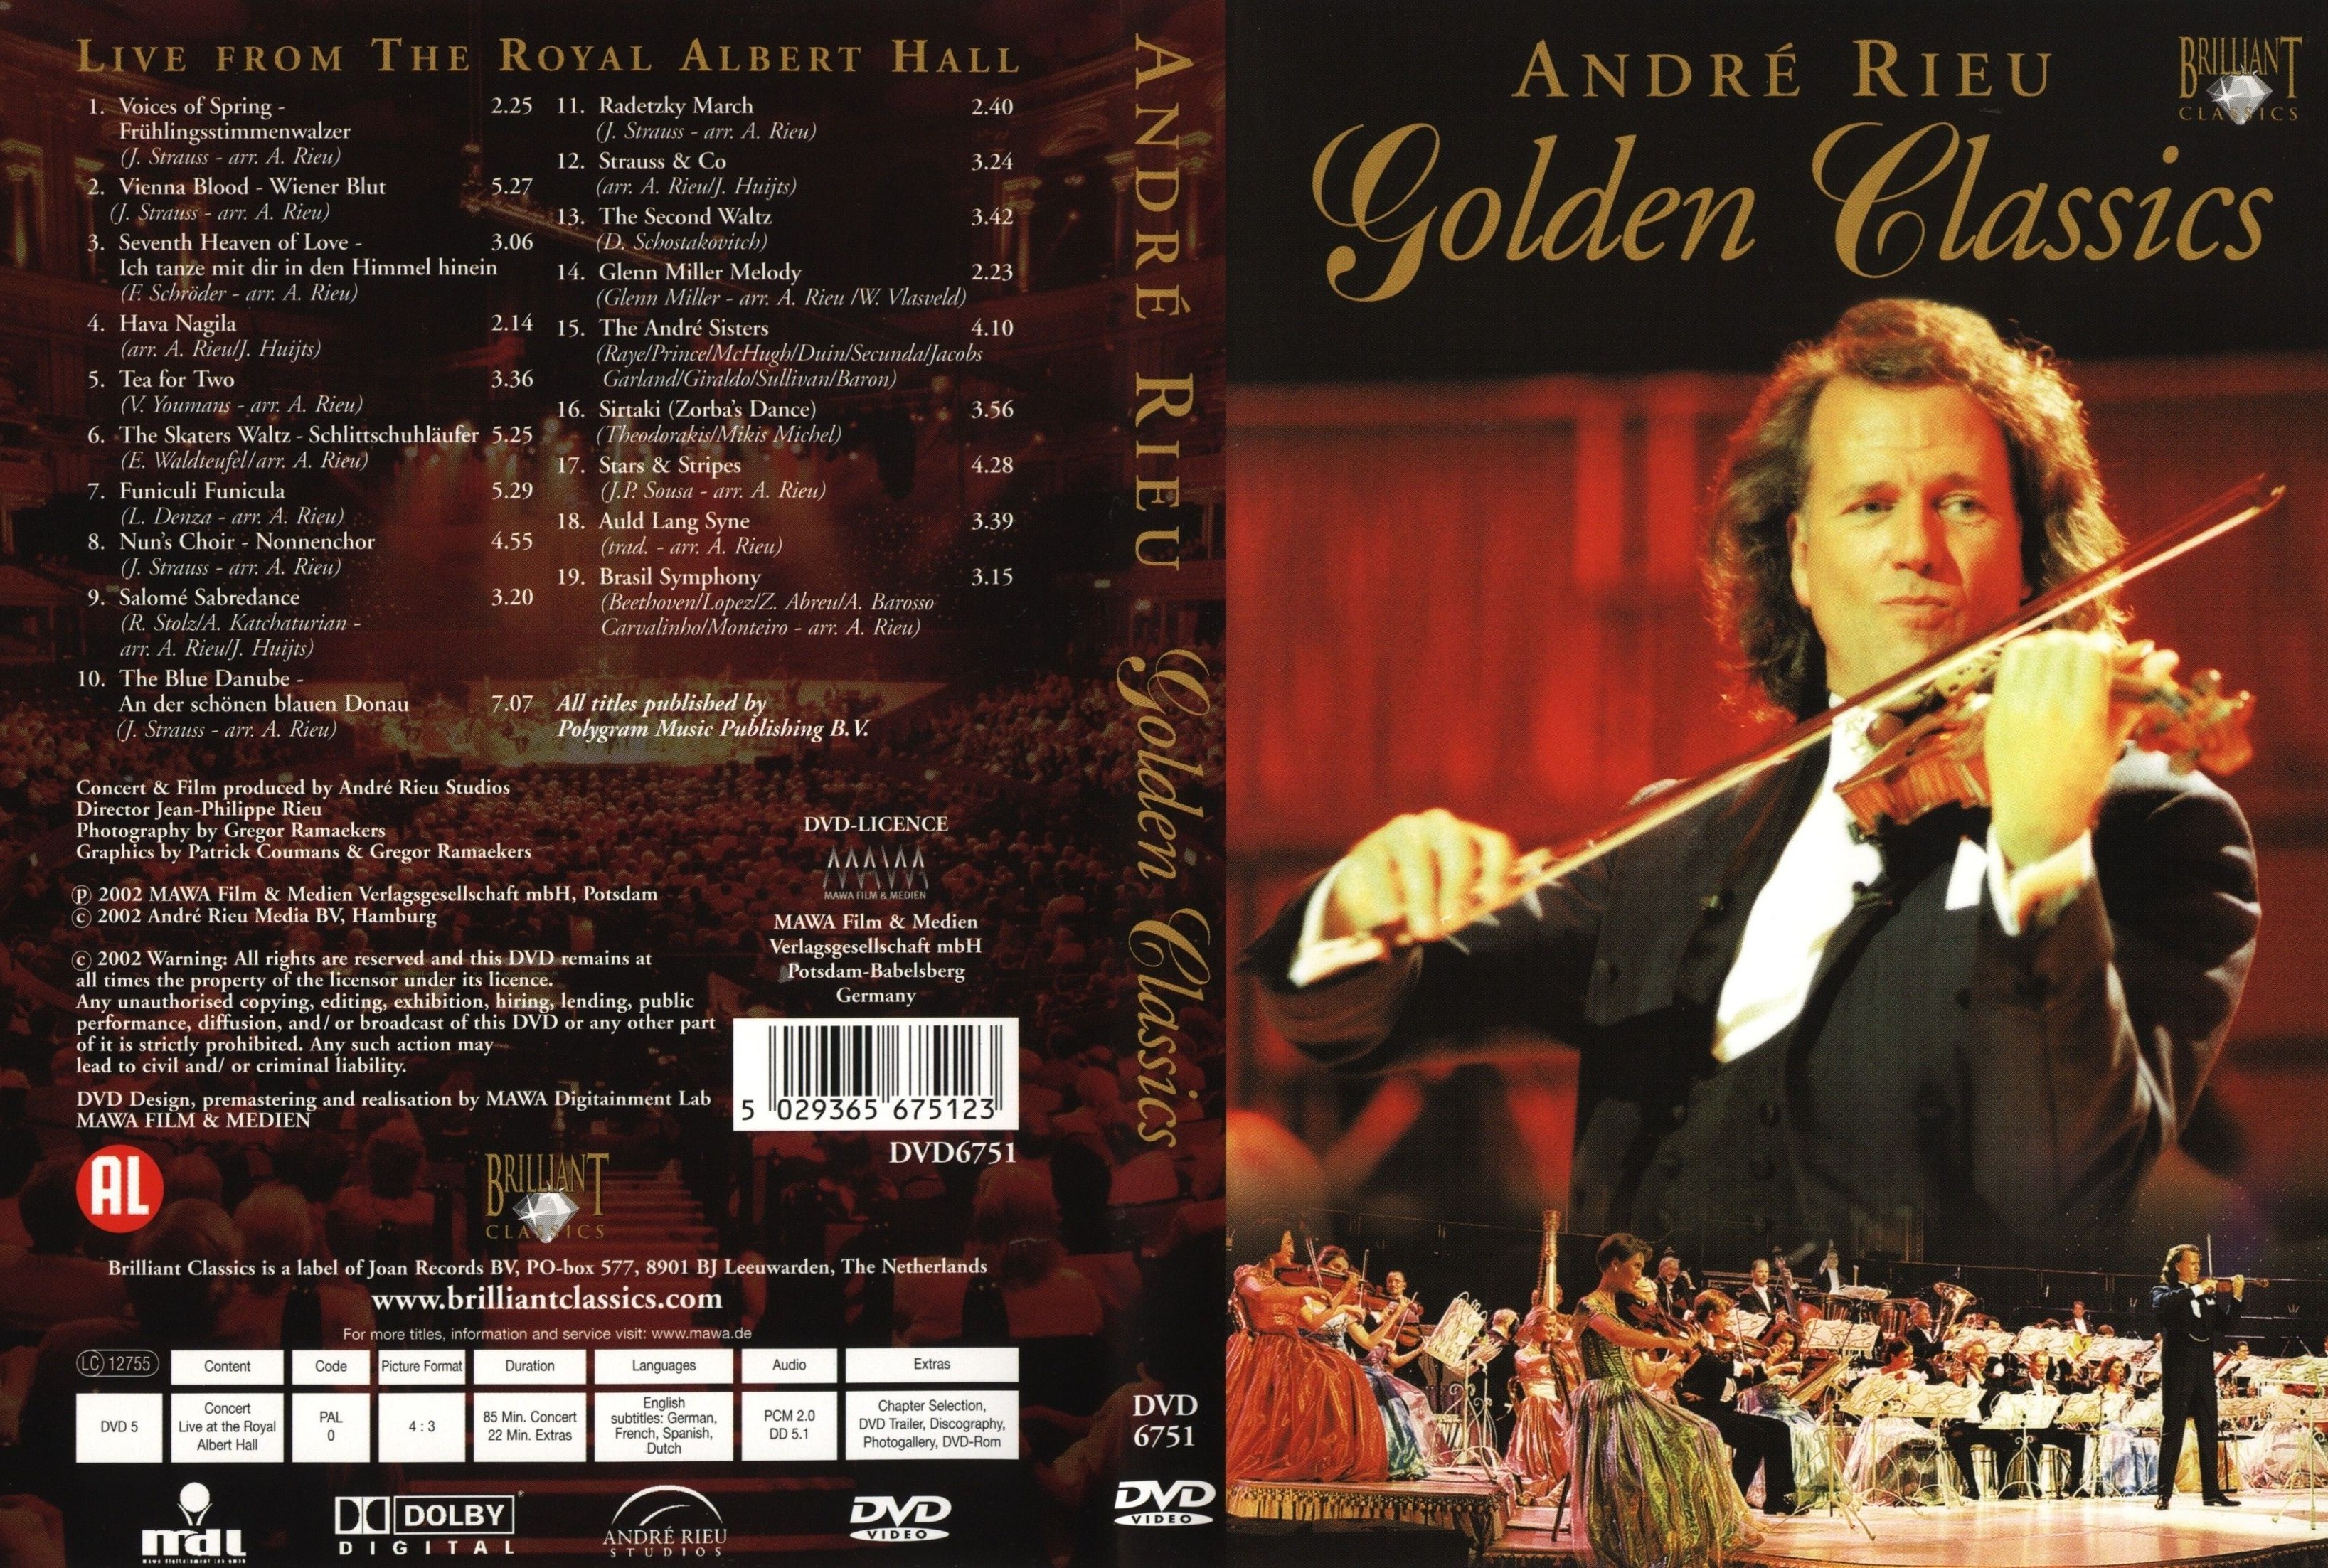 Jaquette DVD Andre Rieu Golden Classics